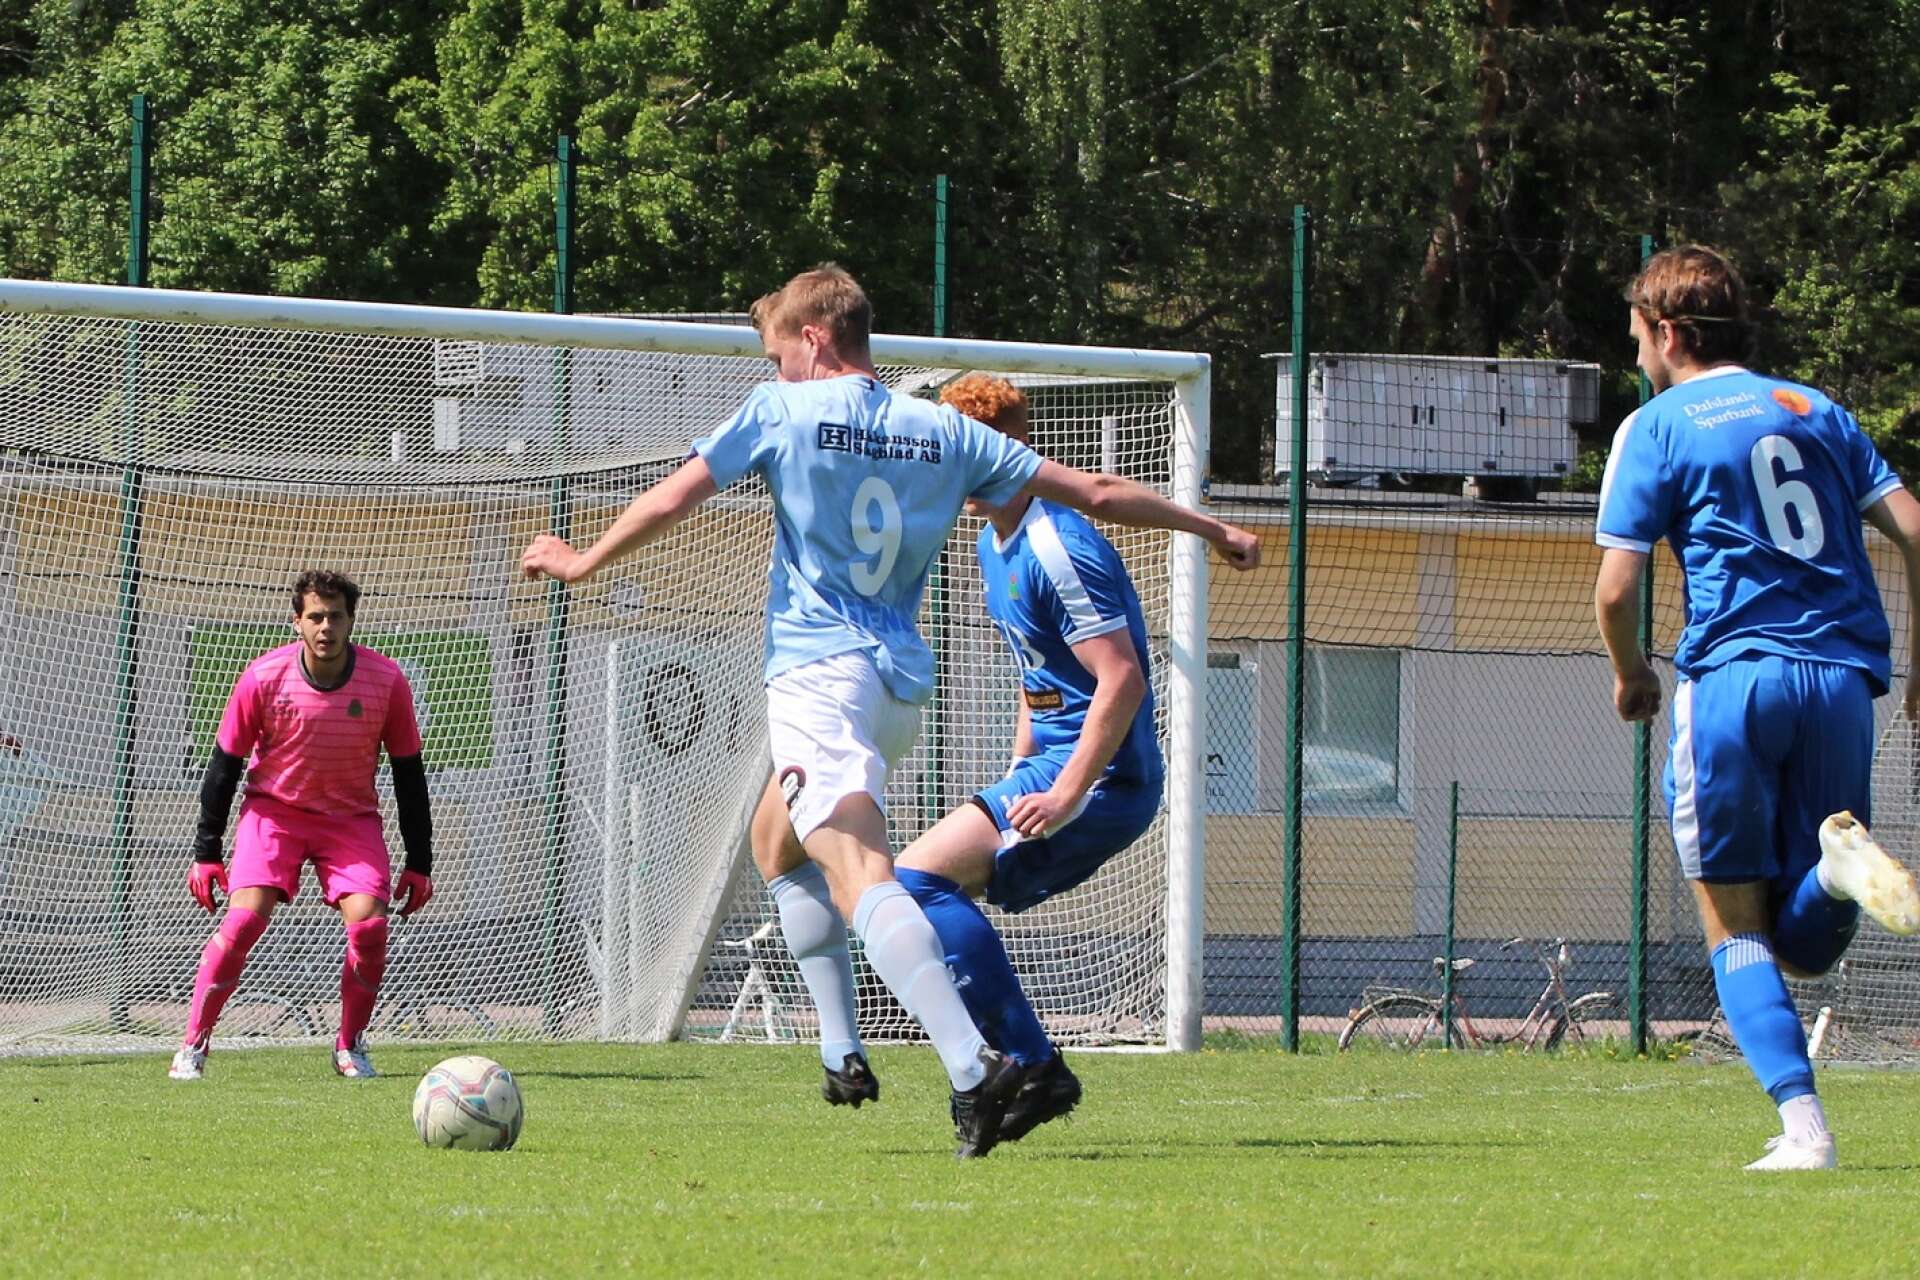 Vikens Emil Eldh kommer på offensiven, men Melker Paulsson får undan bollen.
 
Fotboll på Rösvallen, Åmål
Division 4 Bohuslän–Dalsland
IF Viken – Eds FF 0–2 (0–1)